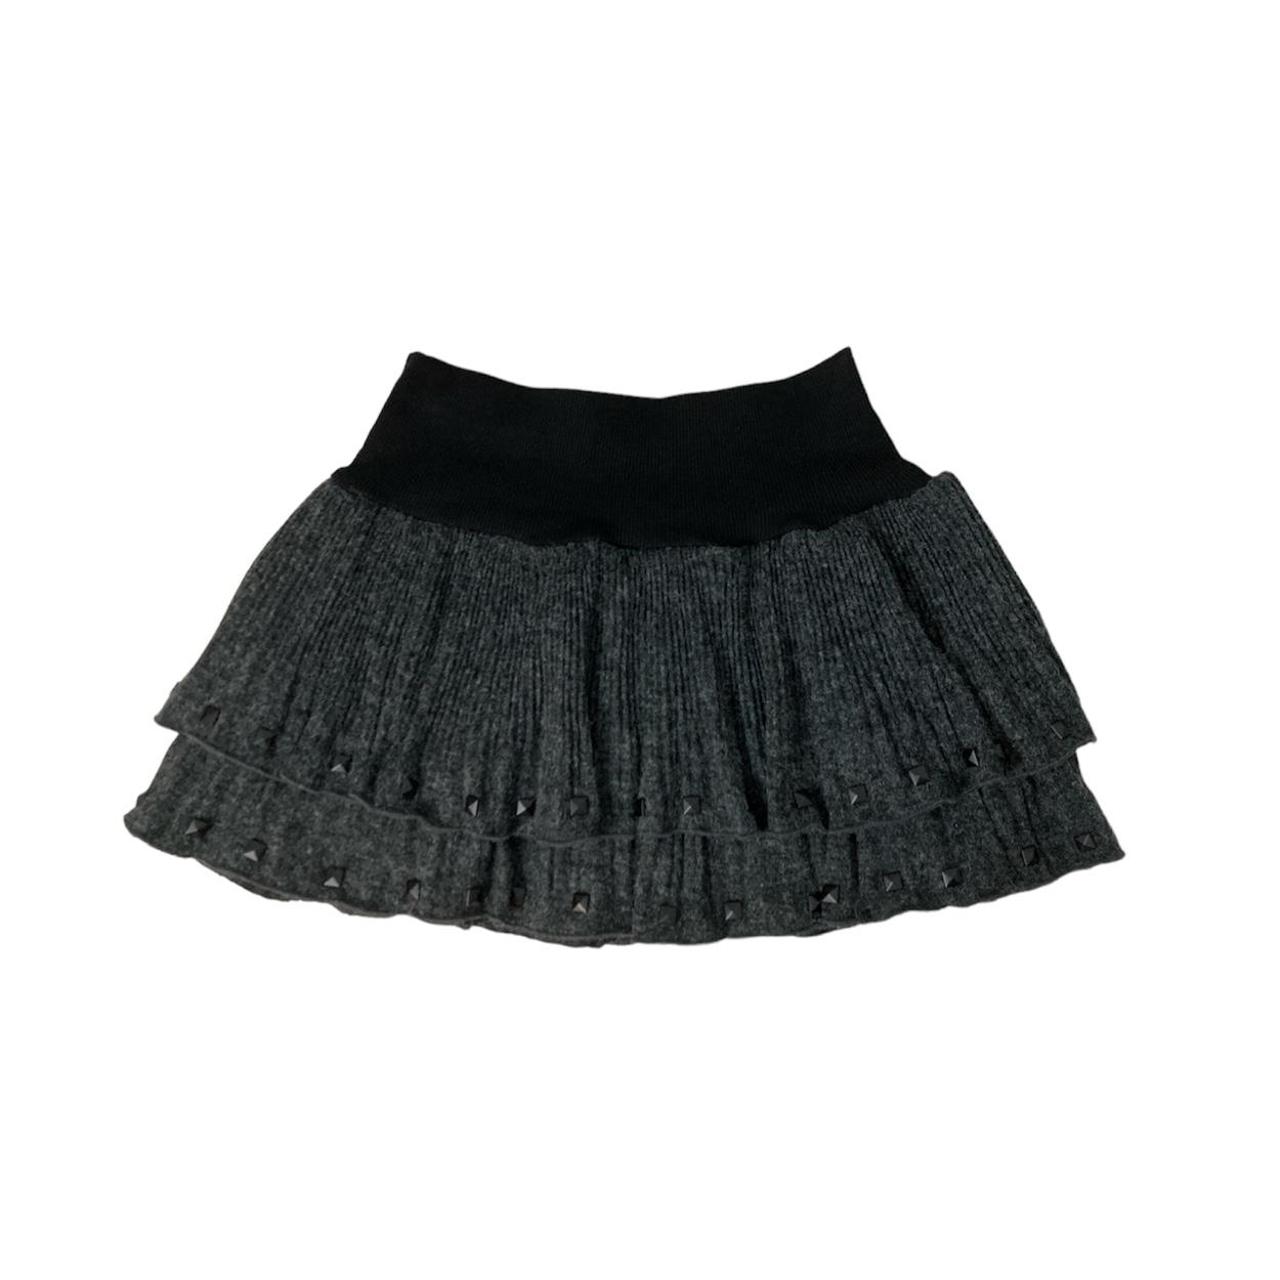 Grunge studs layered knit mini skirt 🐀 ️ Uk 4-8... - Depop